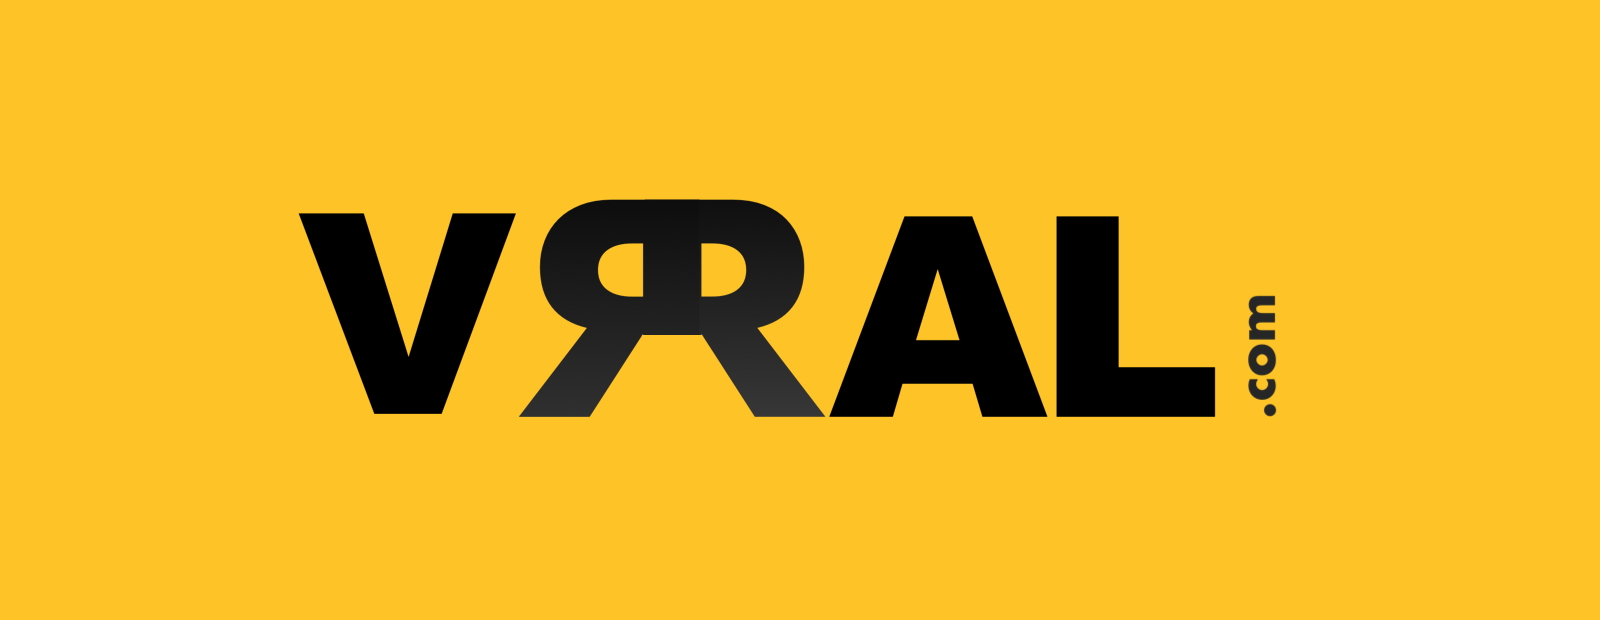 vrral_com_logo.png